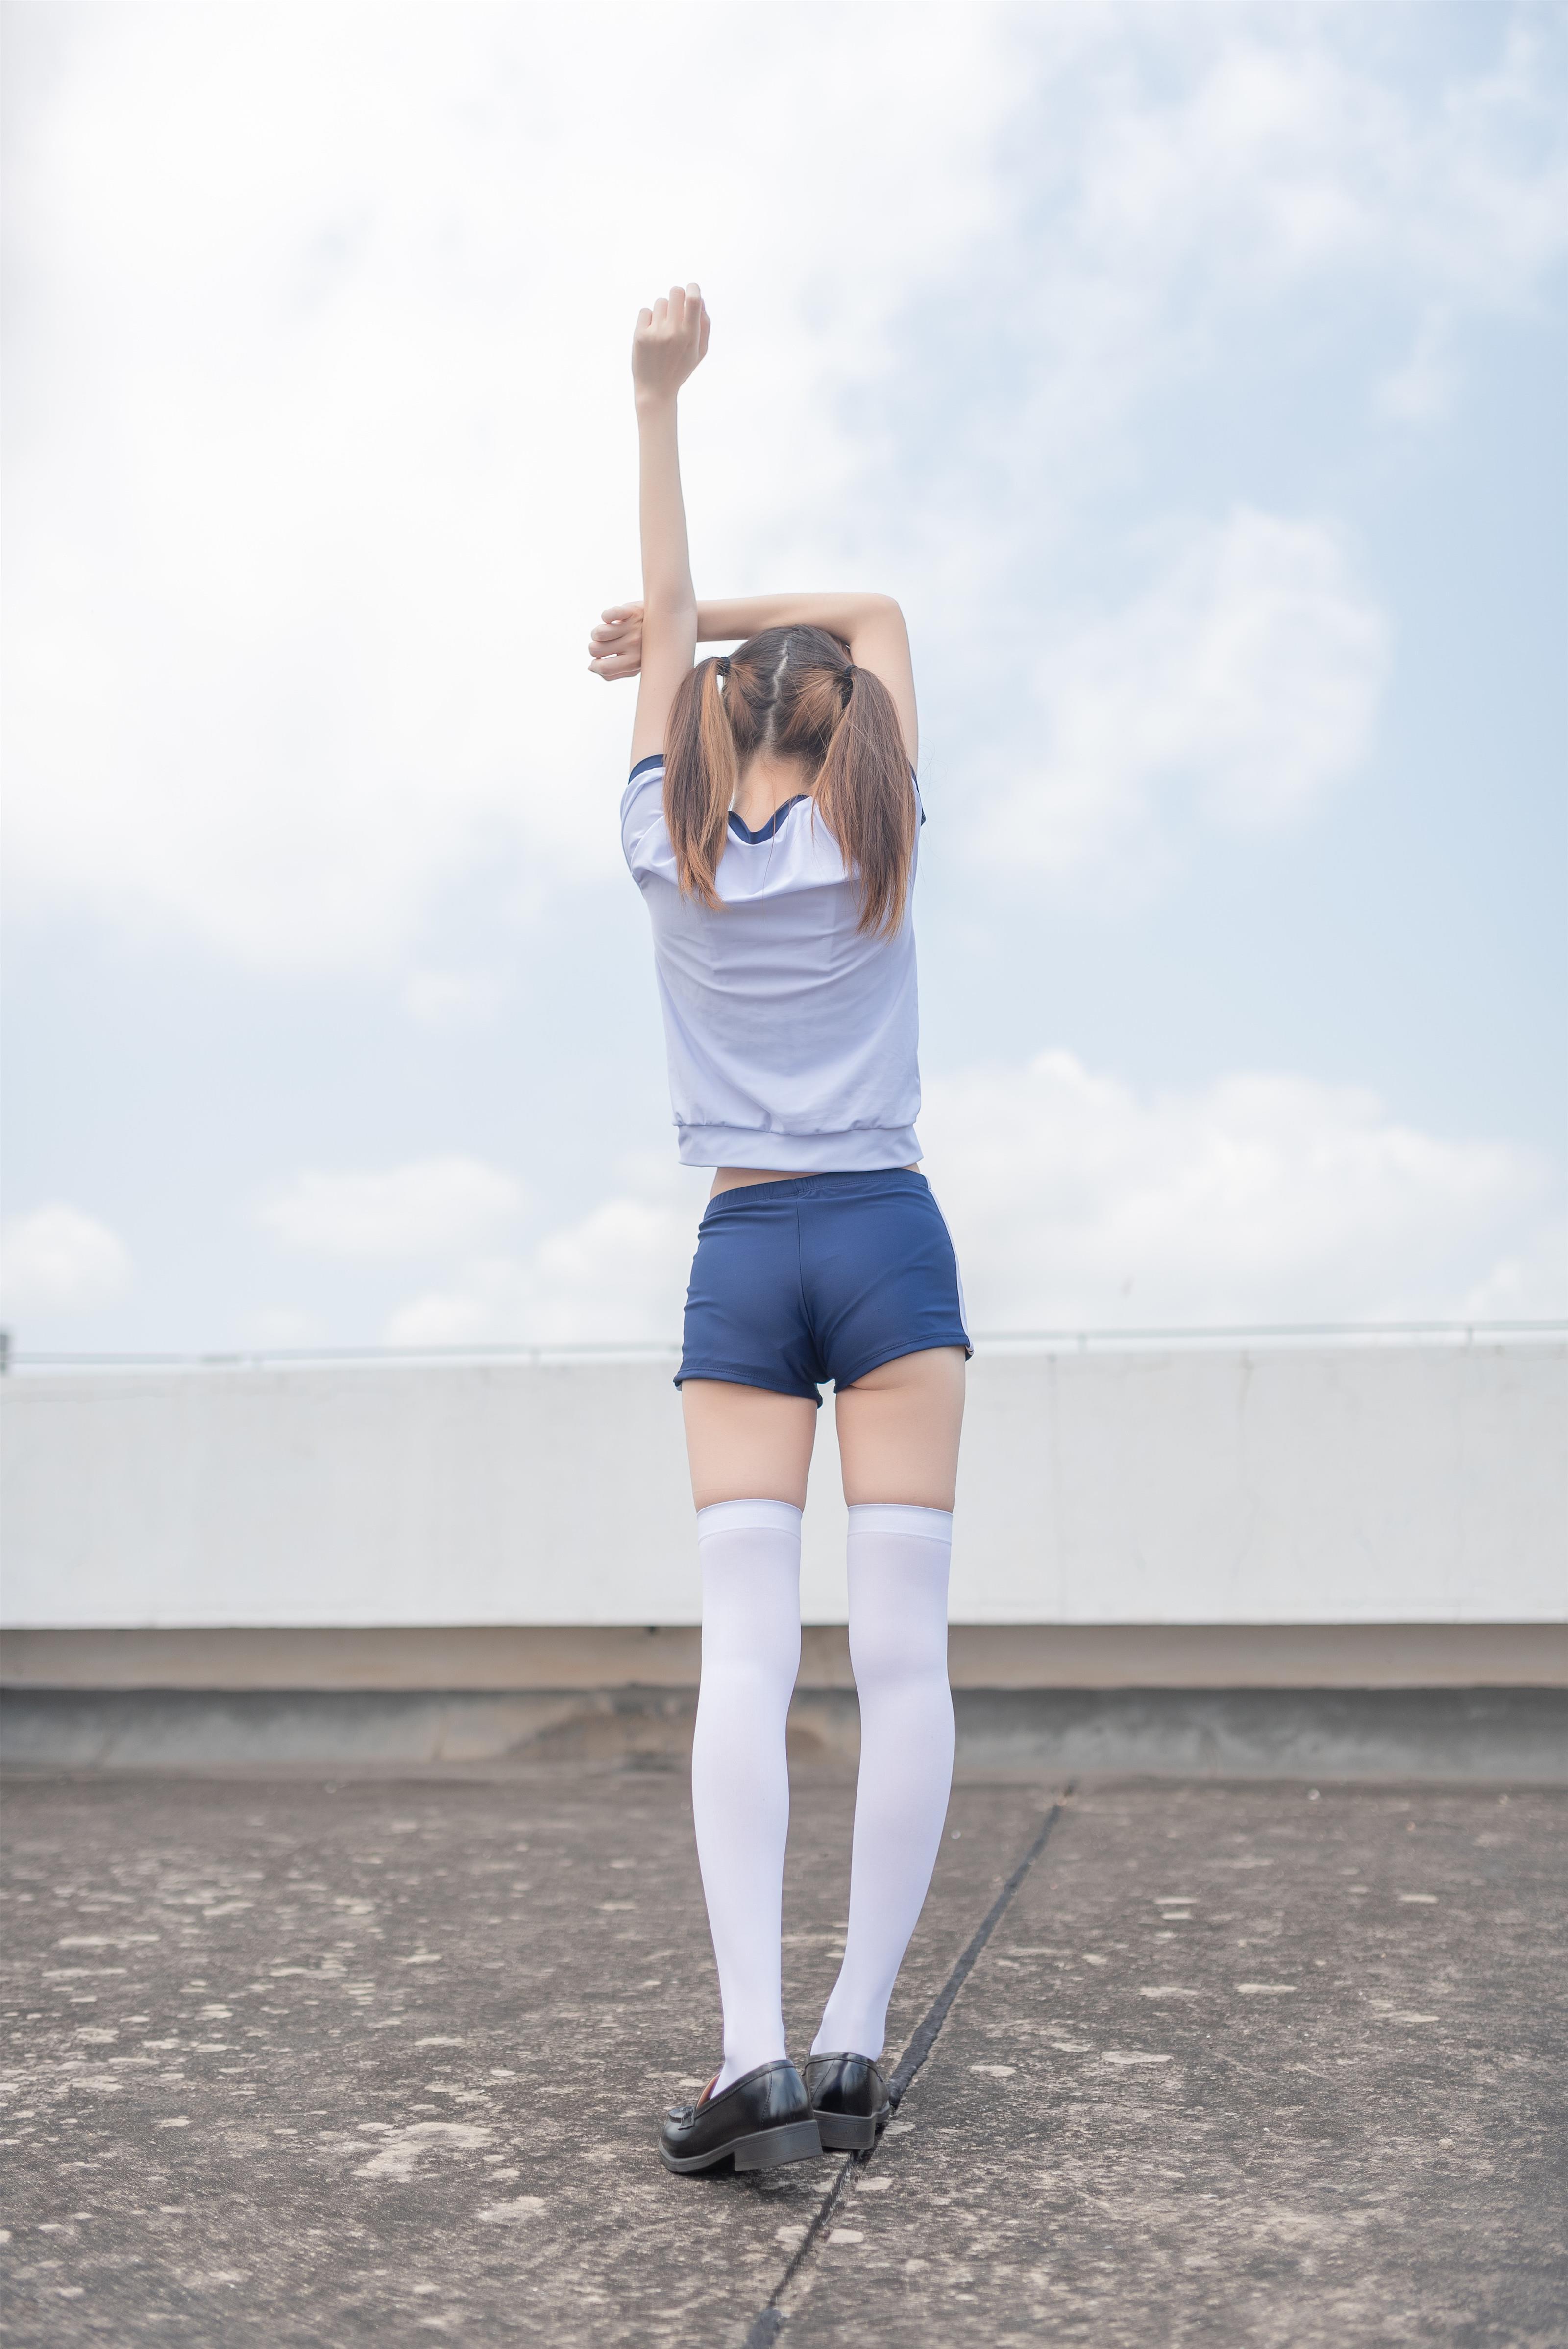 [风之领域]NO.045 性感小萝莉 白色短袖与蓝色运动短裤加白色丝袜美腿私房写真集,